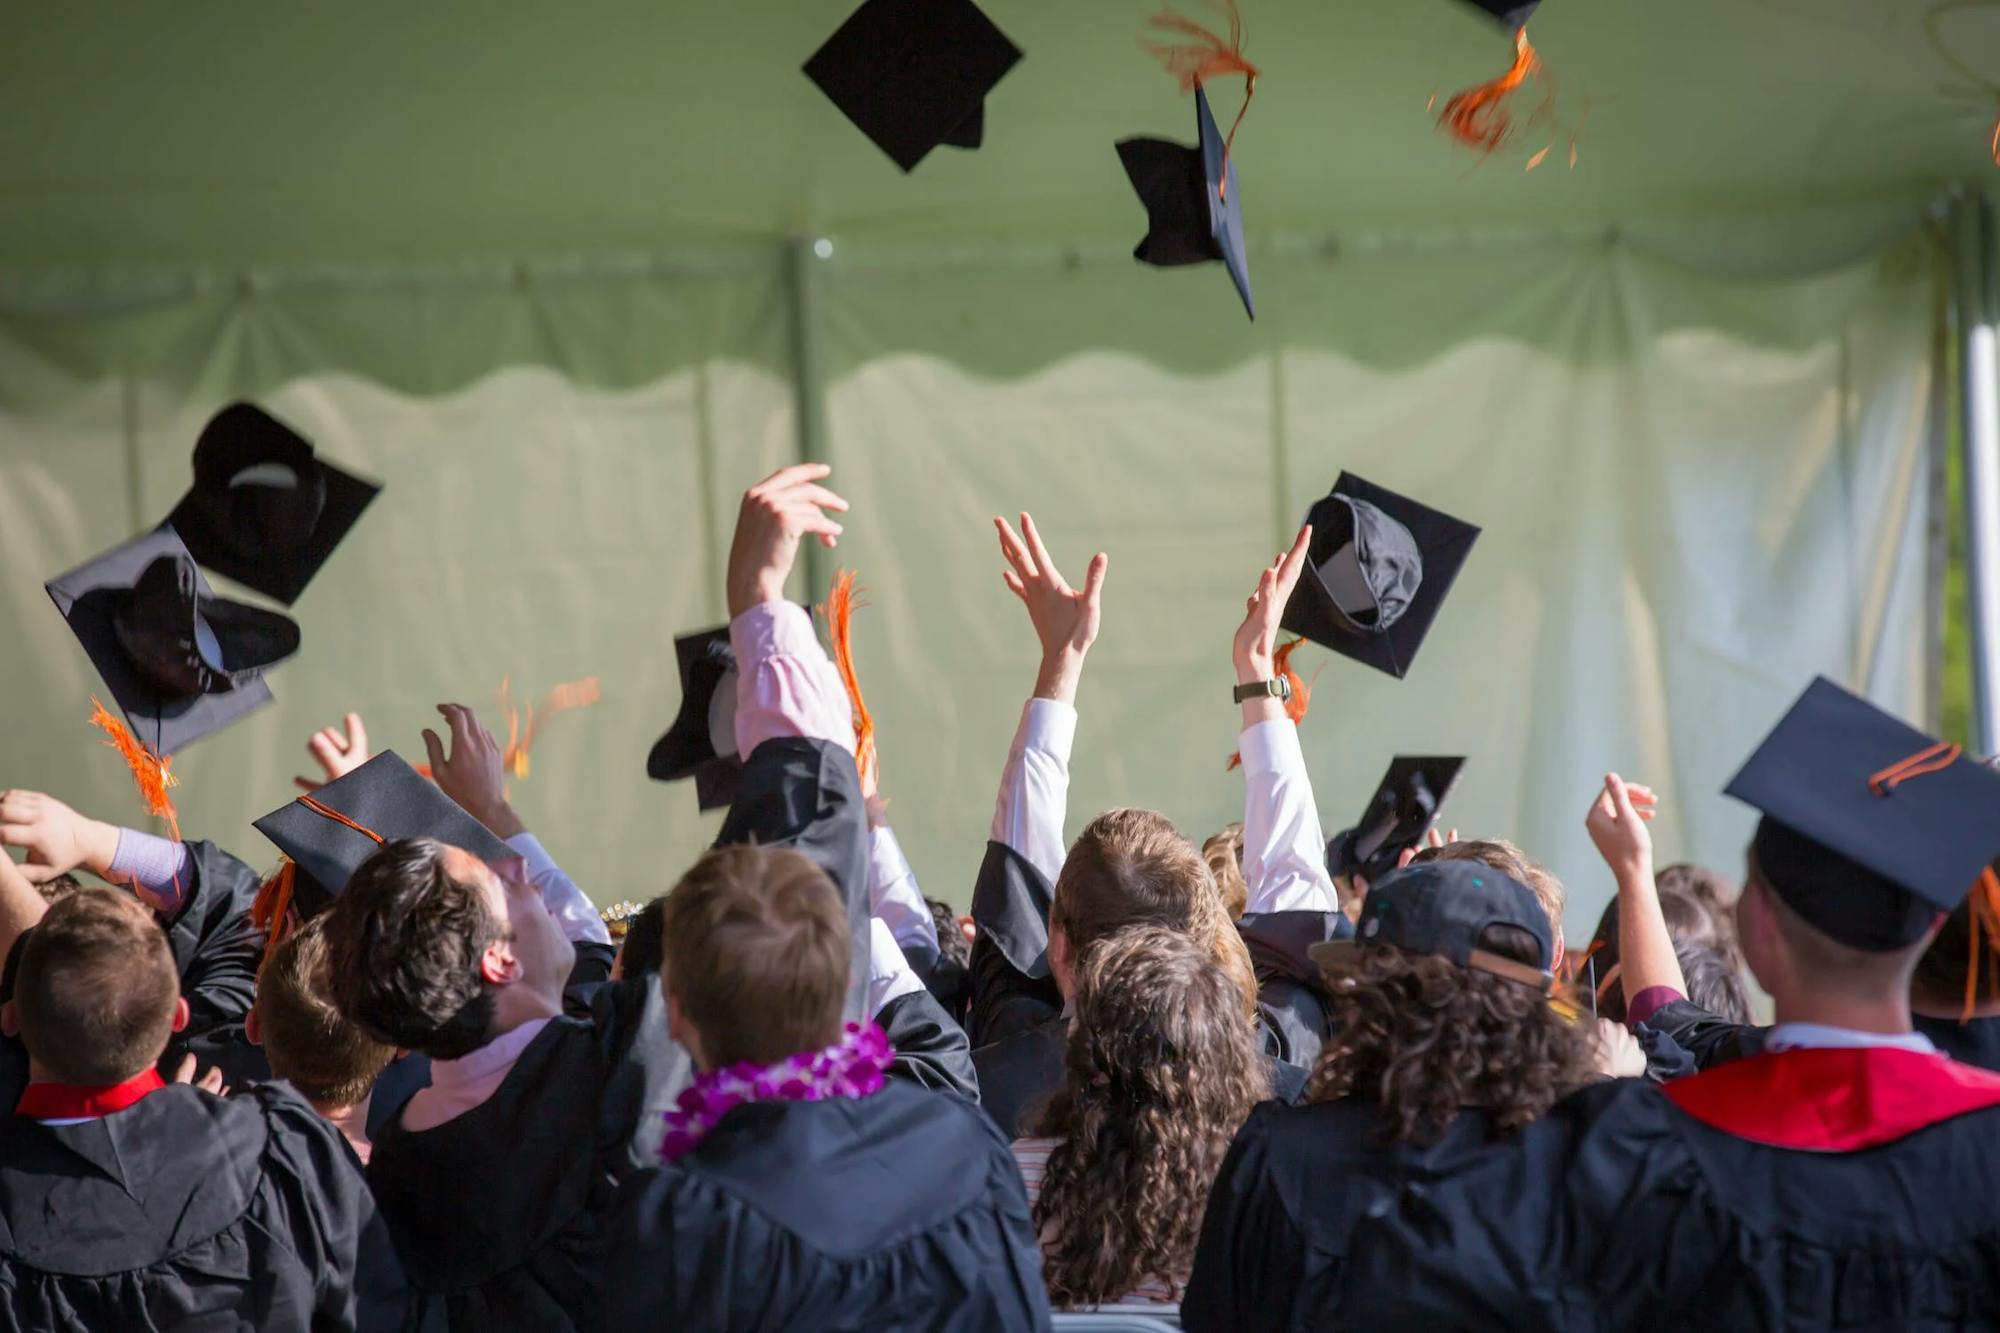 Abschlussparty: Studienabsolvierende schmeißen ihre Bachelorhüte in die Luft 